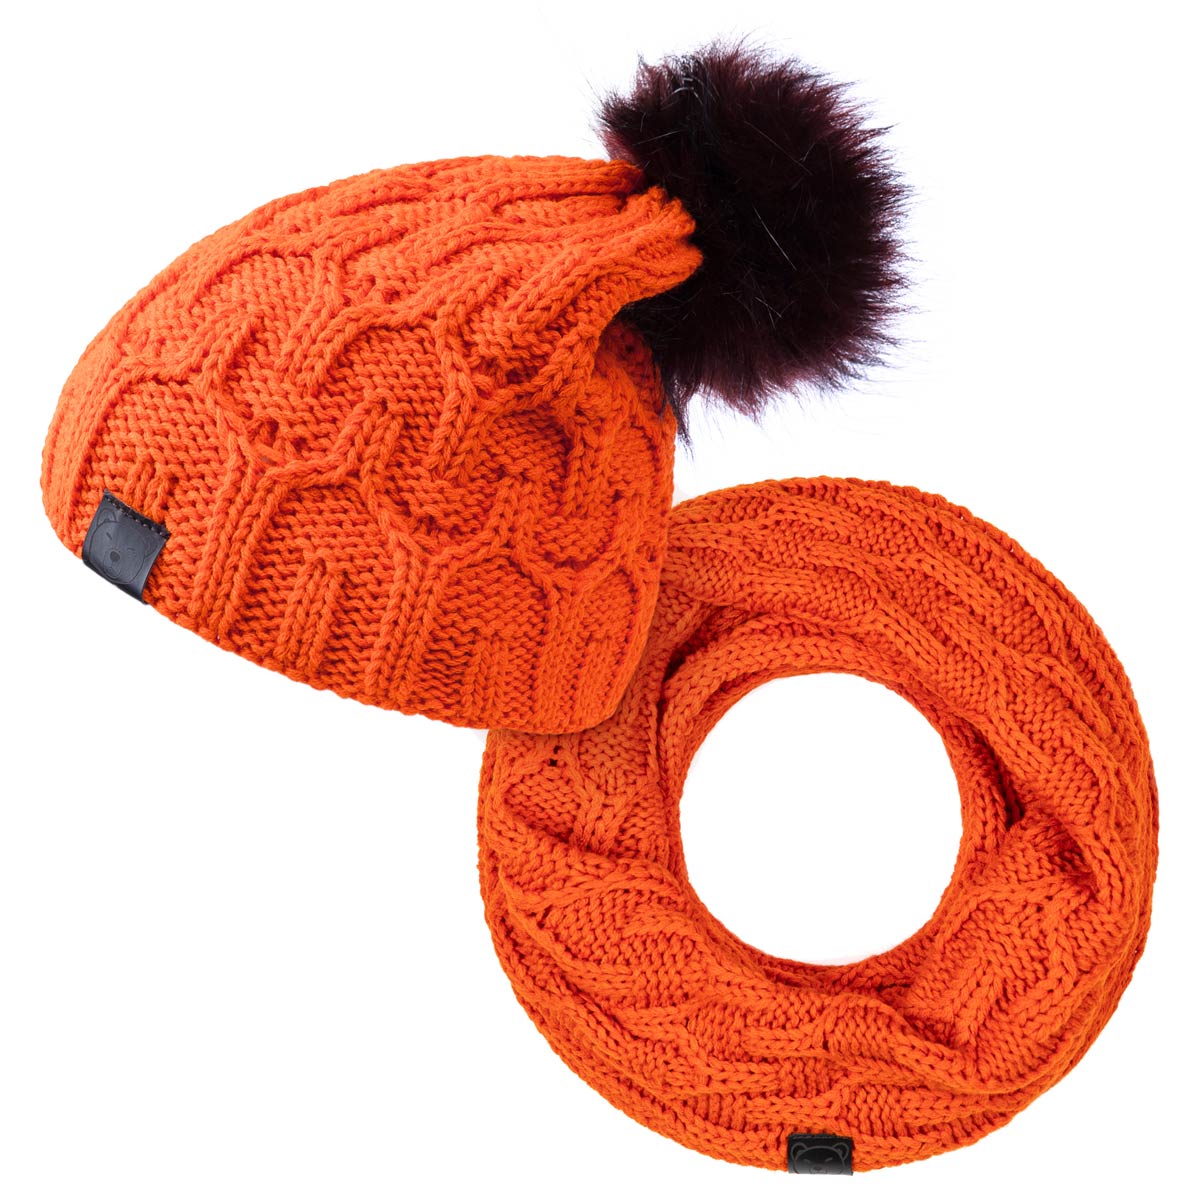 Ensemble-snood-et-bonnet-orange-chauds-confortables-made-in-Europe--PK-00153_F1-12--